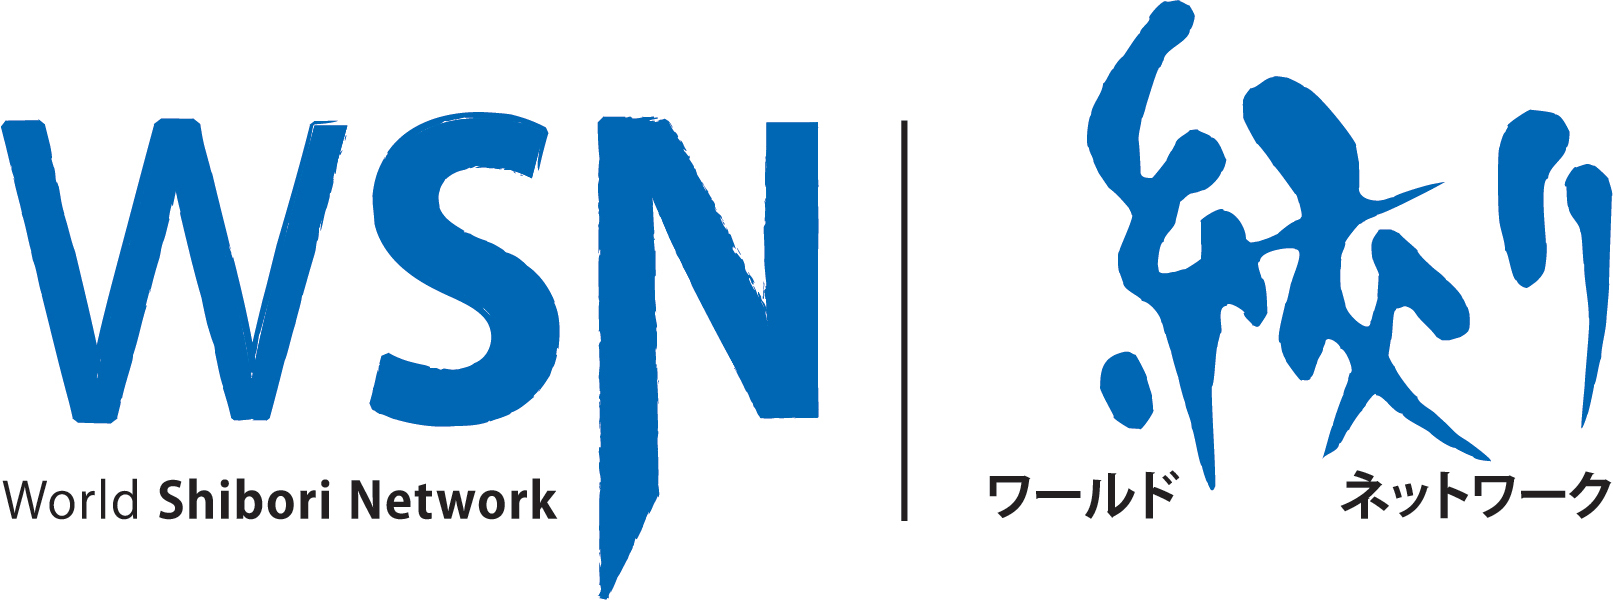 Logo-WSN-Jpn_final_RGB.jpg